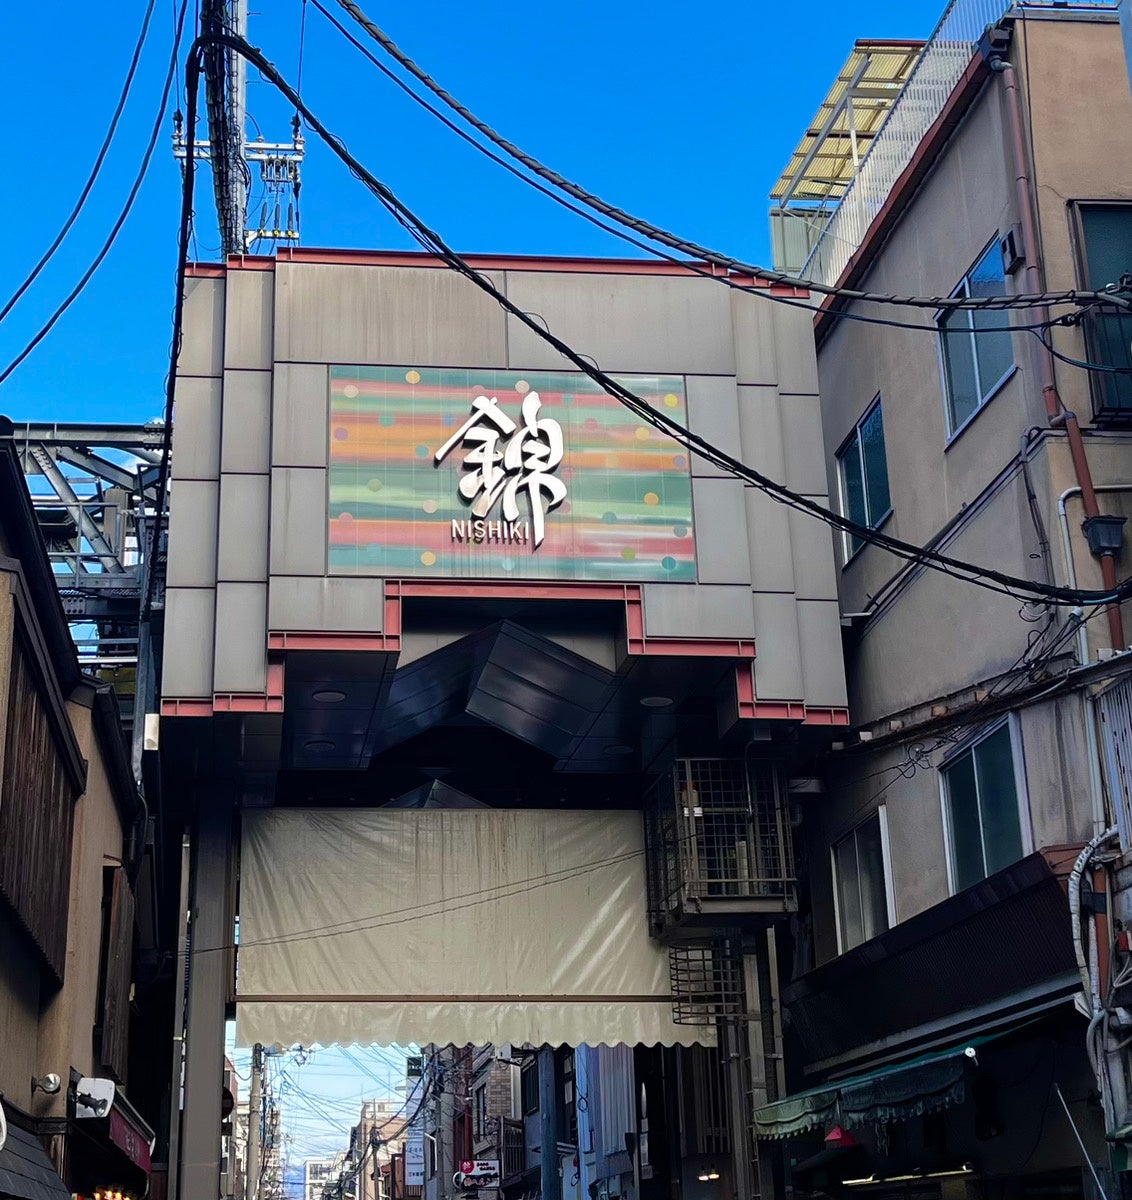 京の台所、400年の歴史 錦市場は京都市内の目抜き通り「四条通り」の１本北に位置し、錦小路通の寺町から高倉まで東西390メートルにもなる「京の台所」と言われる「商店街」です。400年の歴史を持ち、京都市民からは「にしき」という愛称で呼び親しまれています。